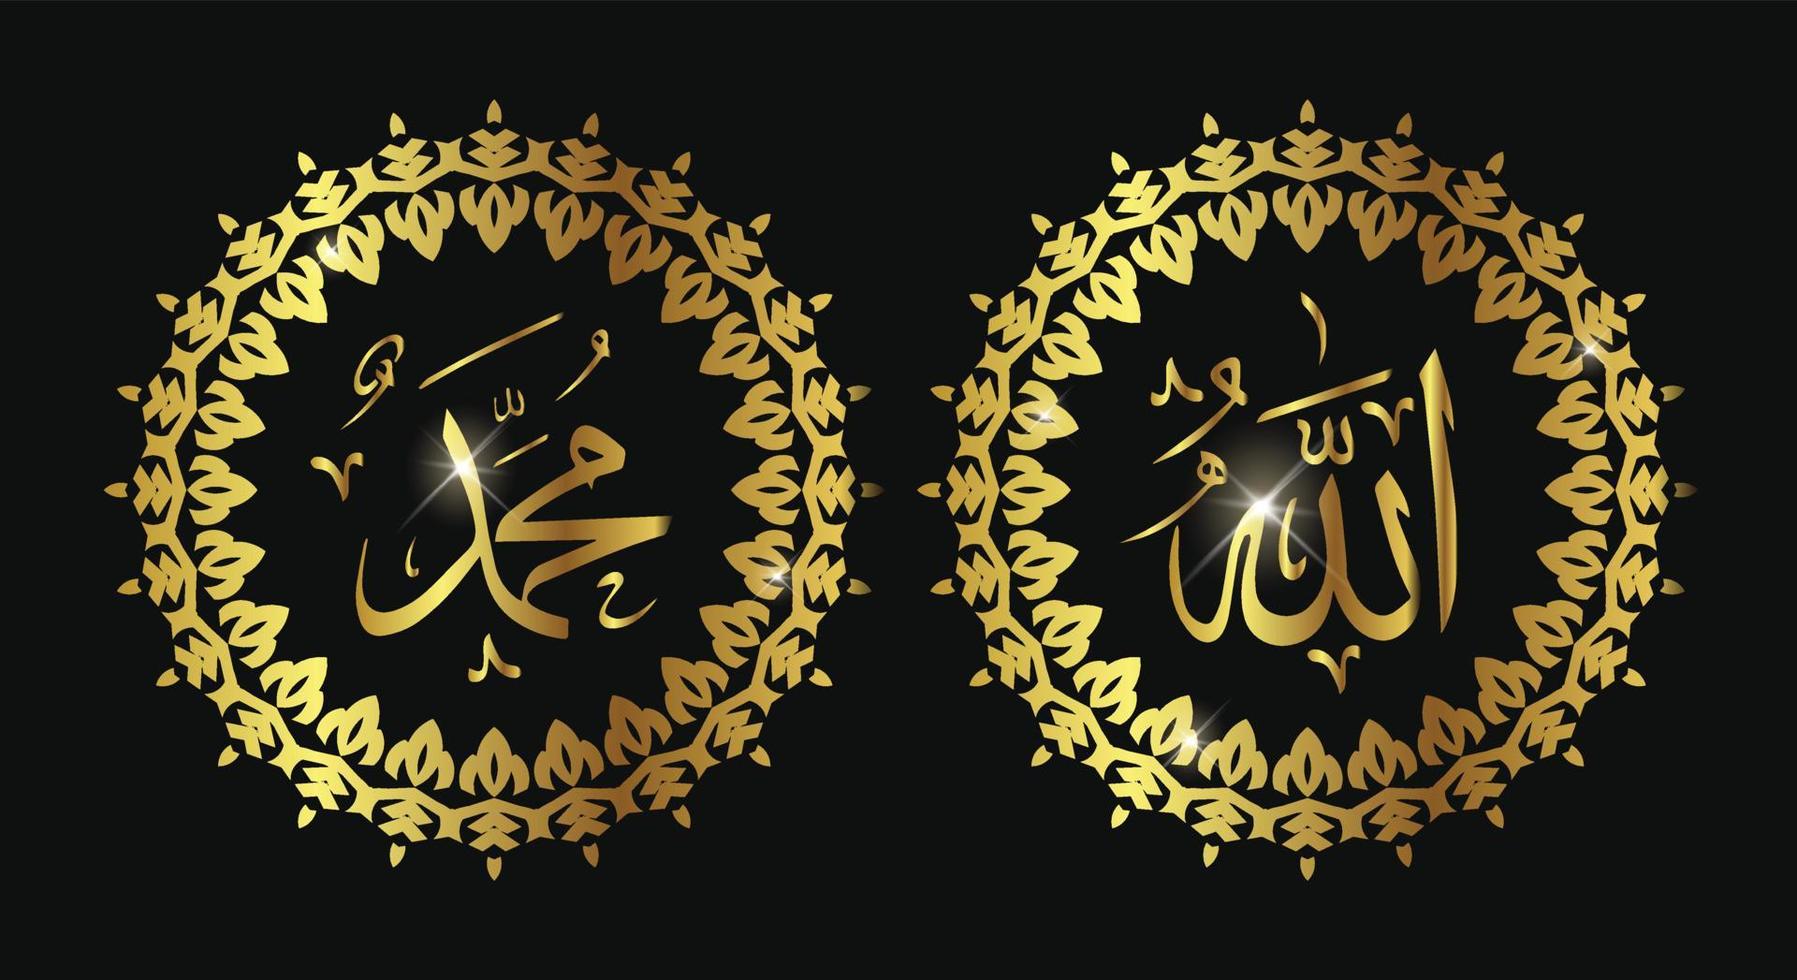 allah muhammad nombre de allah muhammad, arte de caligrafía islámica árabe de allah muhammad, aislado en un fondo oscuro. vector